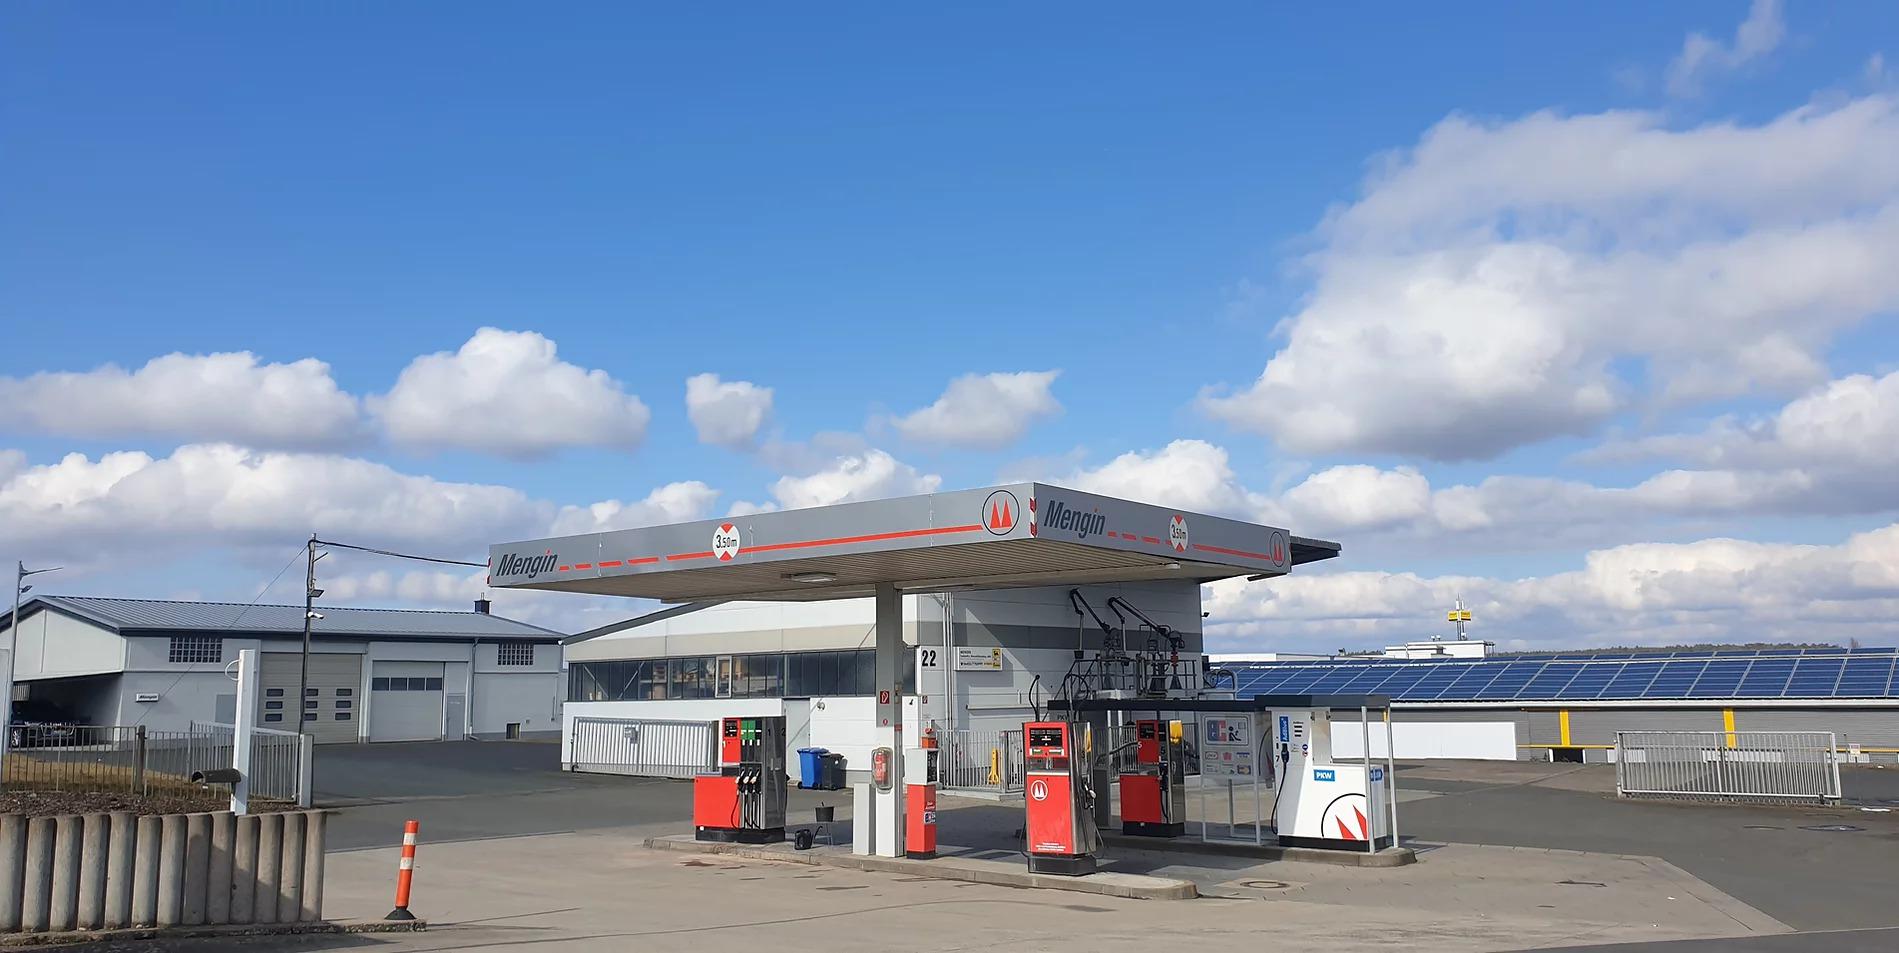 Bild der Tankstop Mengin Treibstoff- und Mineralölhandelsgesellschaft mbH